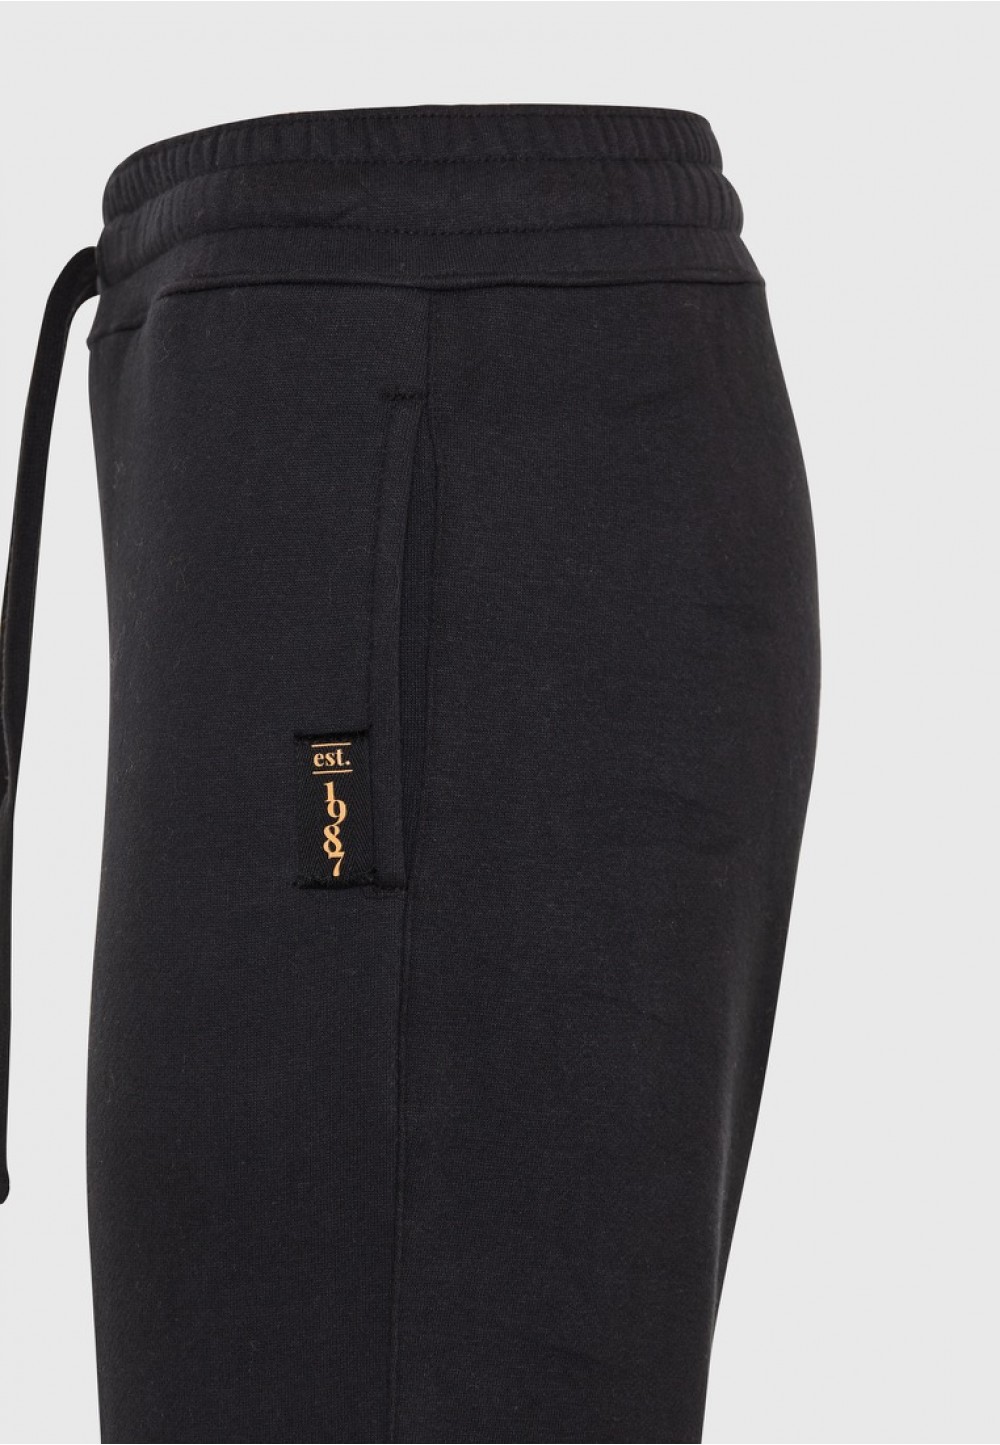 Женские спортивные брюки Funky Buddha с эластичной резинкой черного цвета